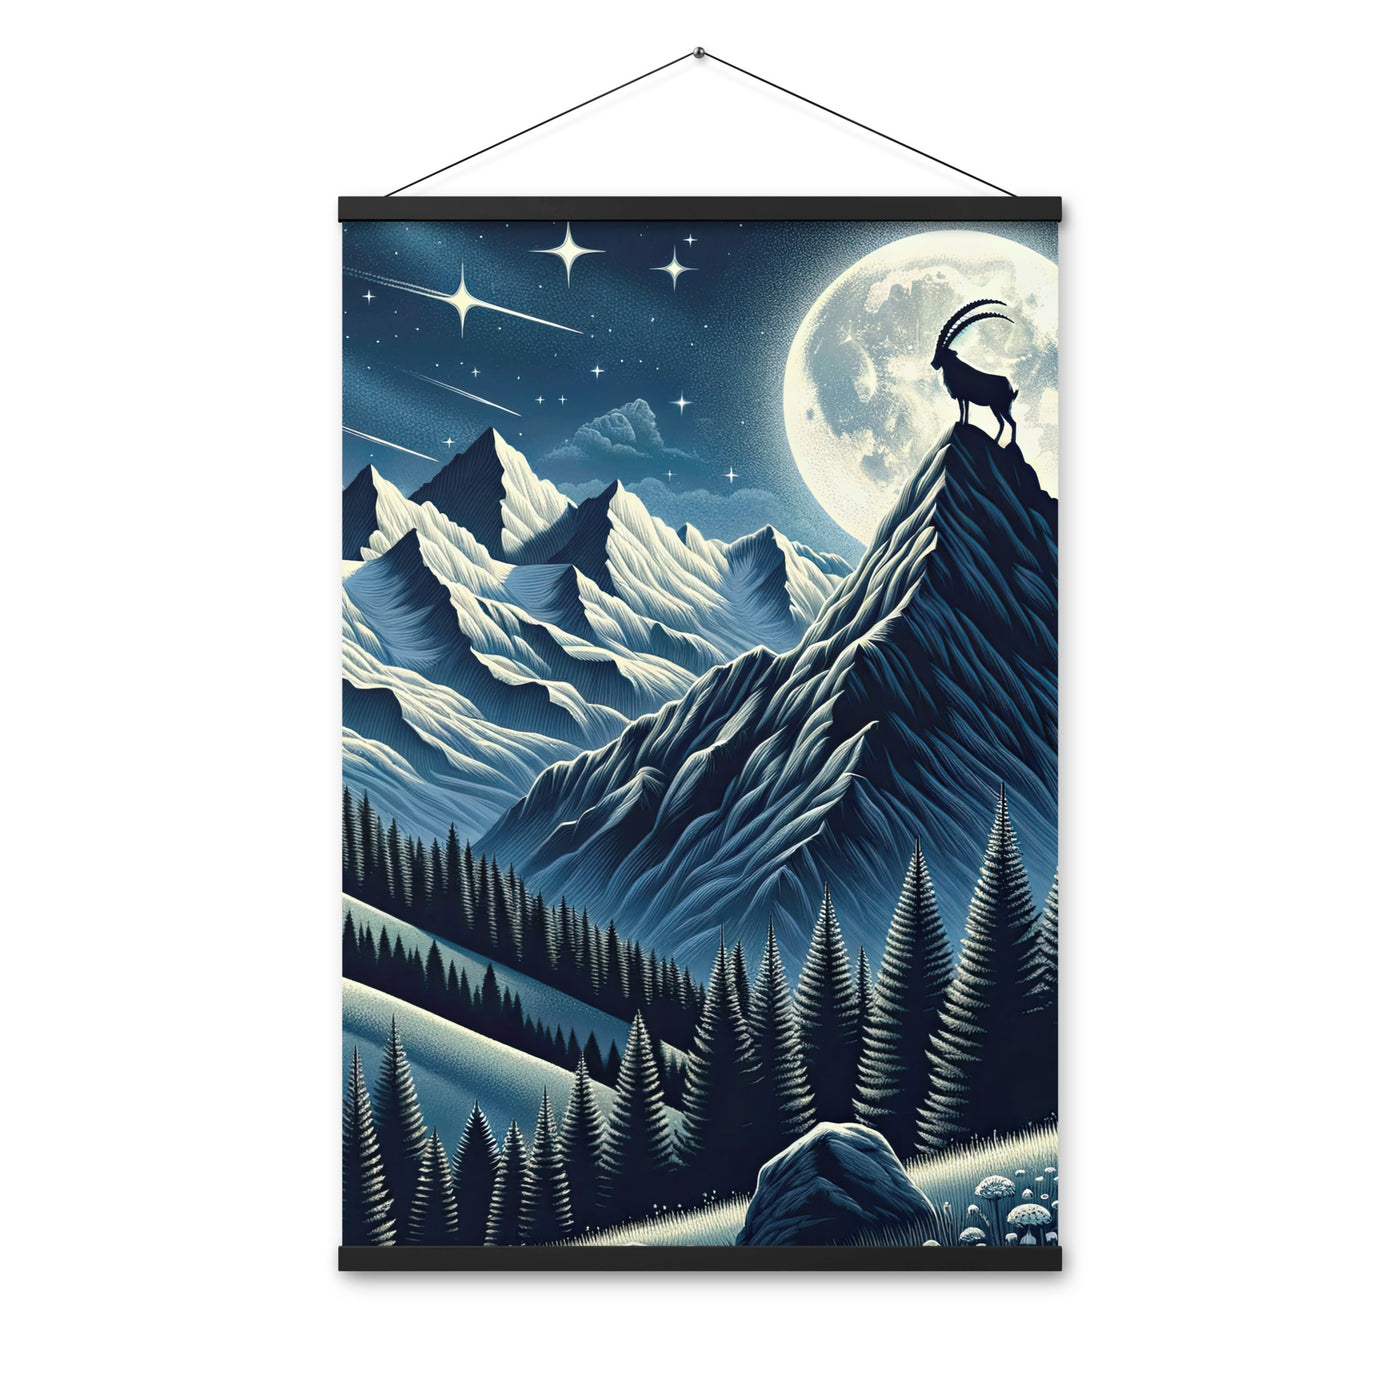 Steinbock in Alpennacht, silberne Berge und Sternenhimmel - Premium Poster mit Aufhängung berge xxx yyy zzz 61 x 91.4 cm